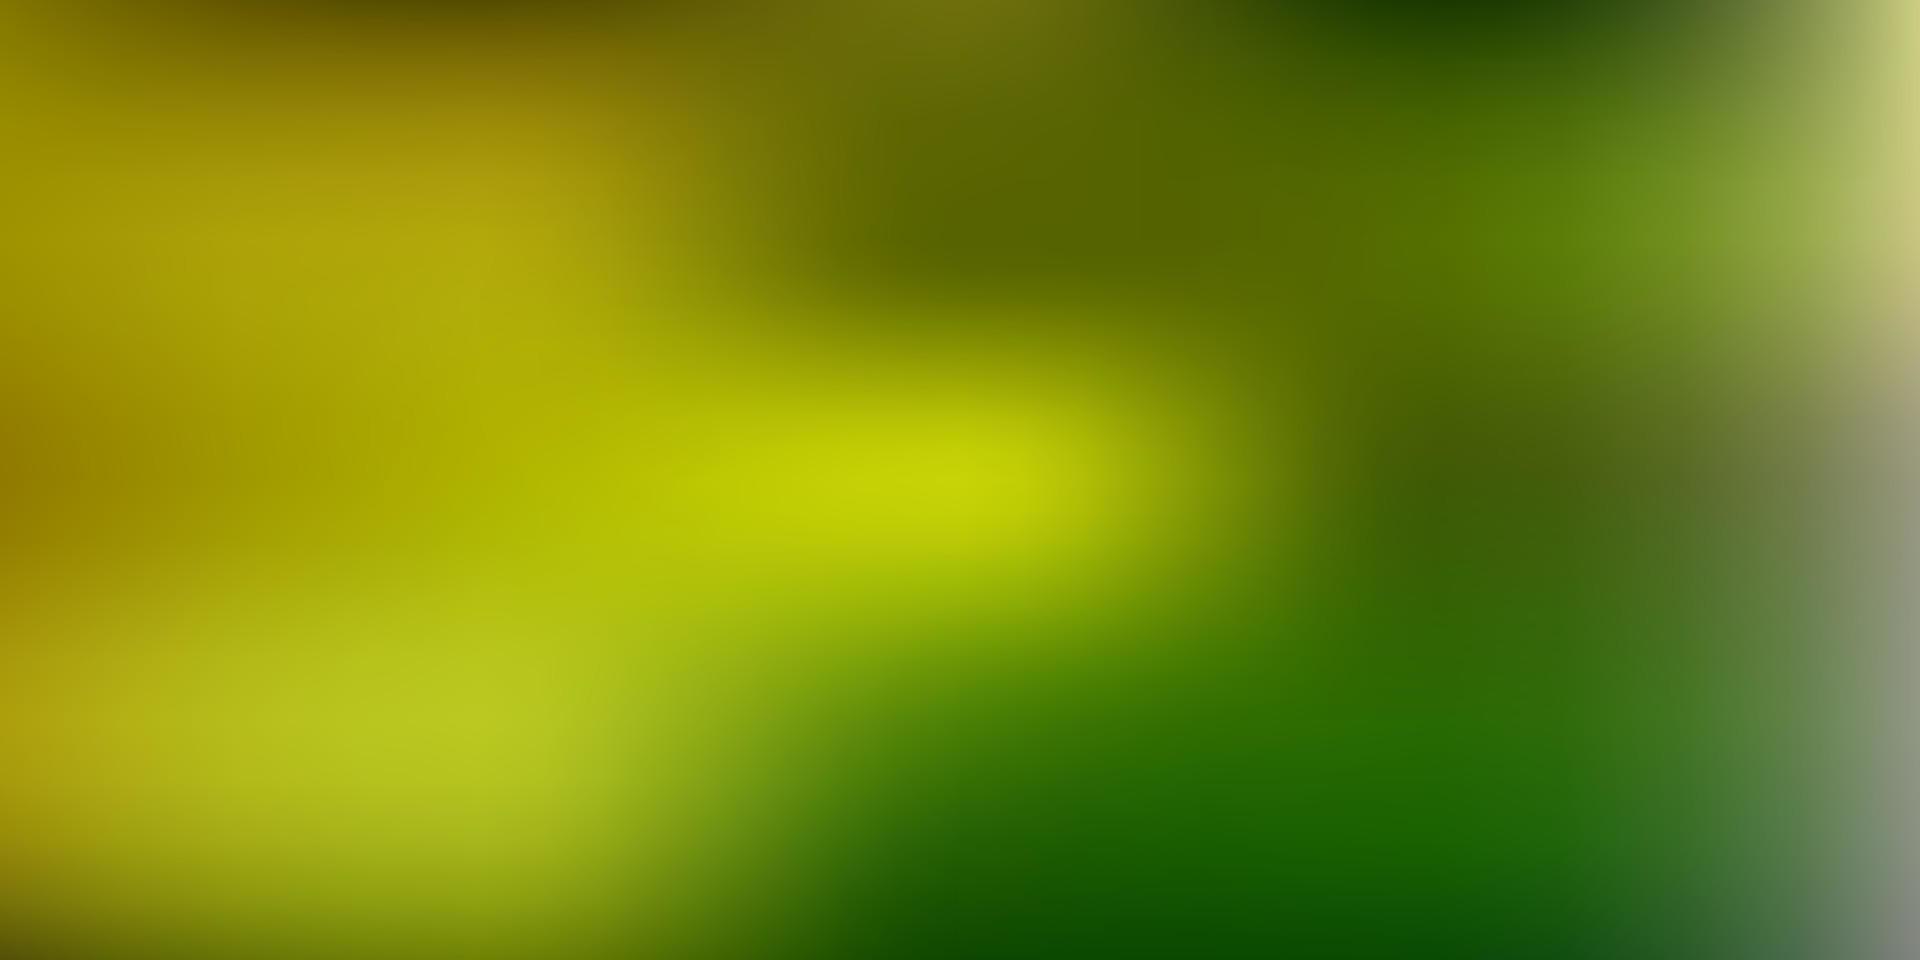 hellgrüne, gelbe Vektor abstrakte Unschärfeschablone.